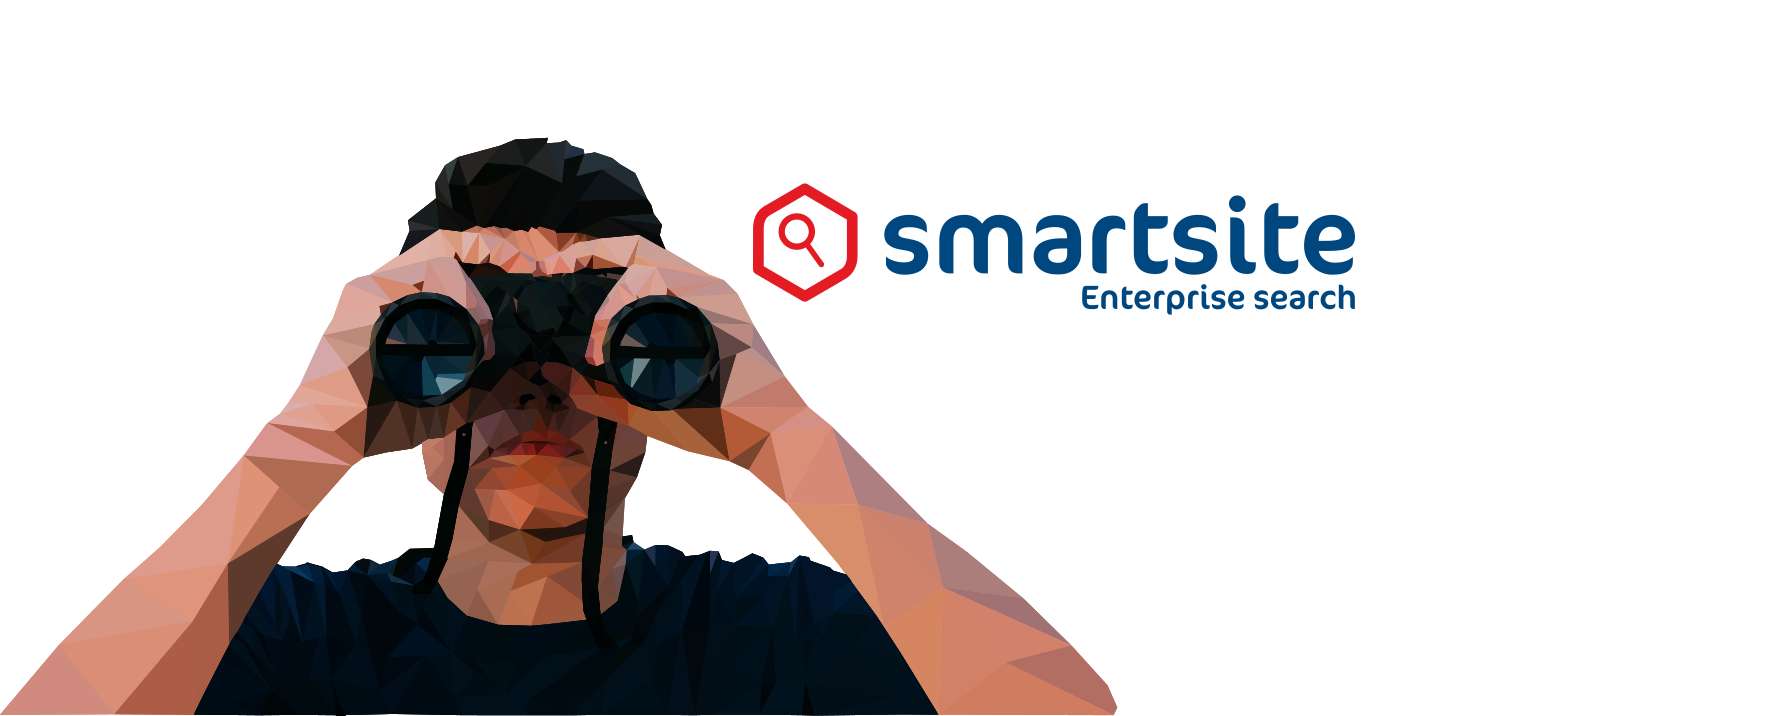 Low poly tekening van donkerharige man met verrekijker en logo Smartsite Enterprise Search